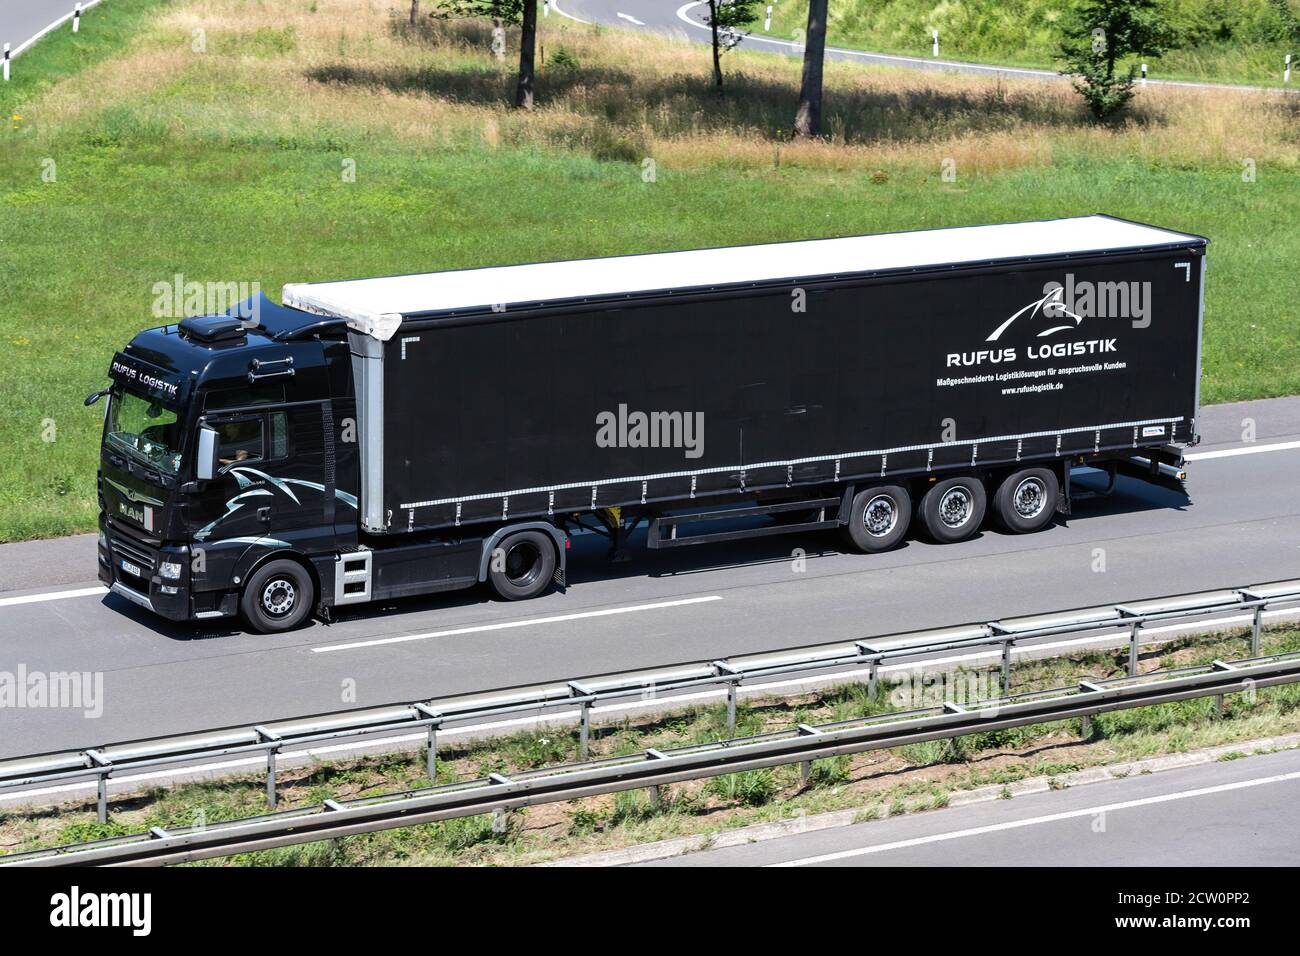 Rufus Logistik MAN TGX camión con remolque en la autopista. Foto de stock